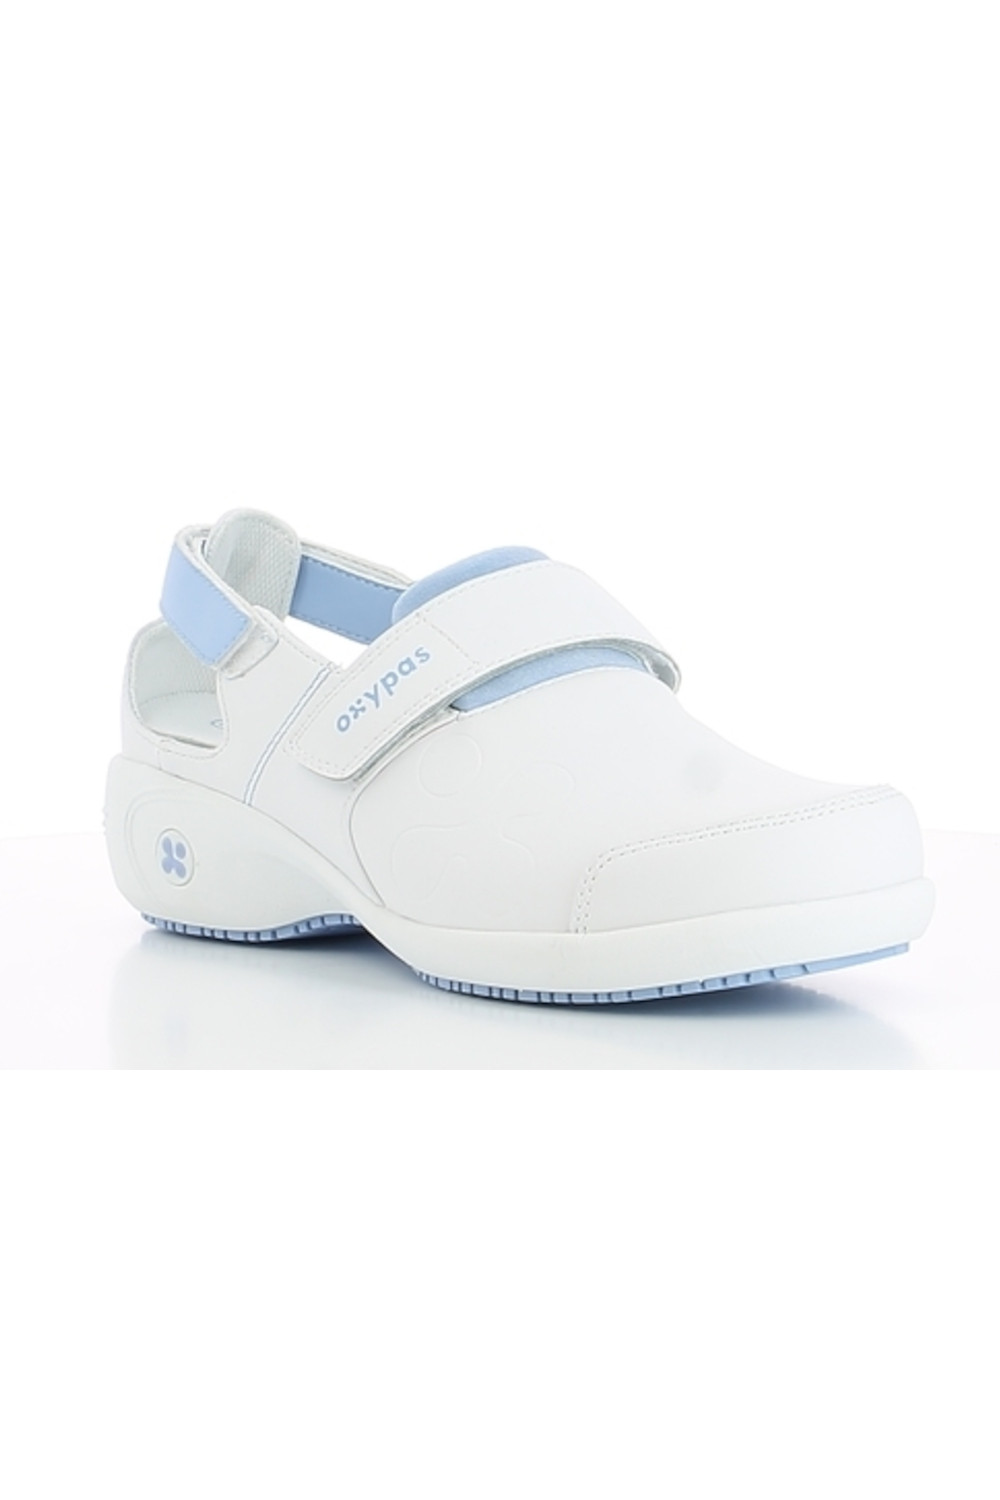 Buty damskie SALMA obuwie medyczne biały z błękitem